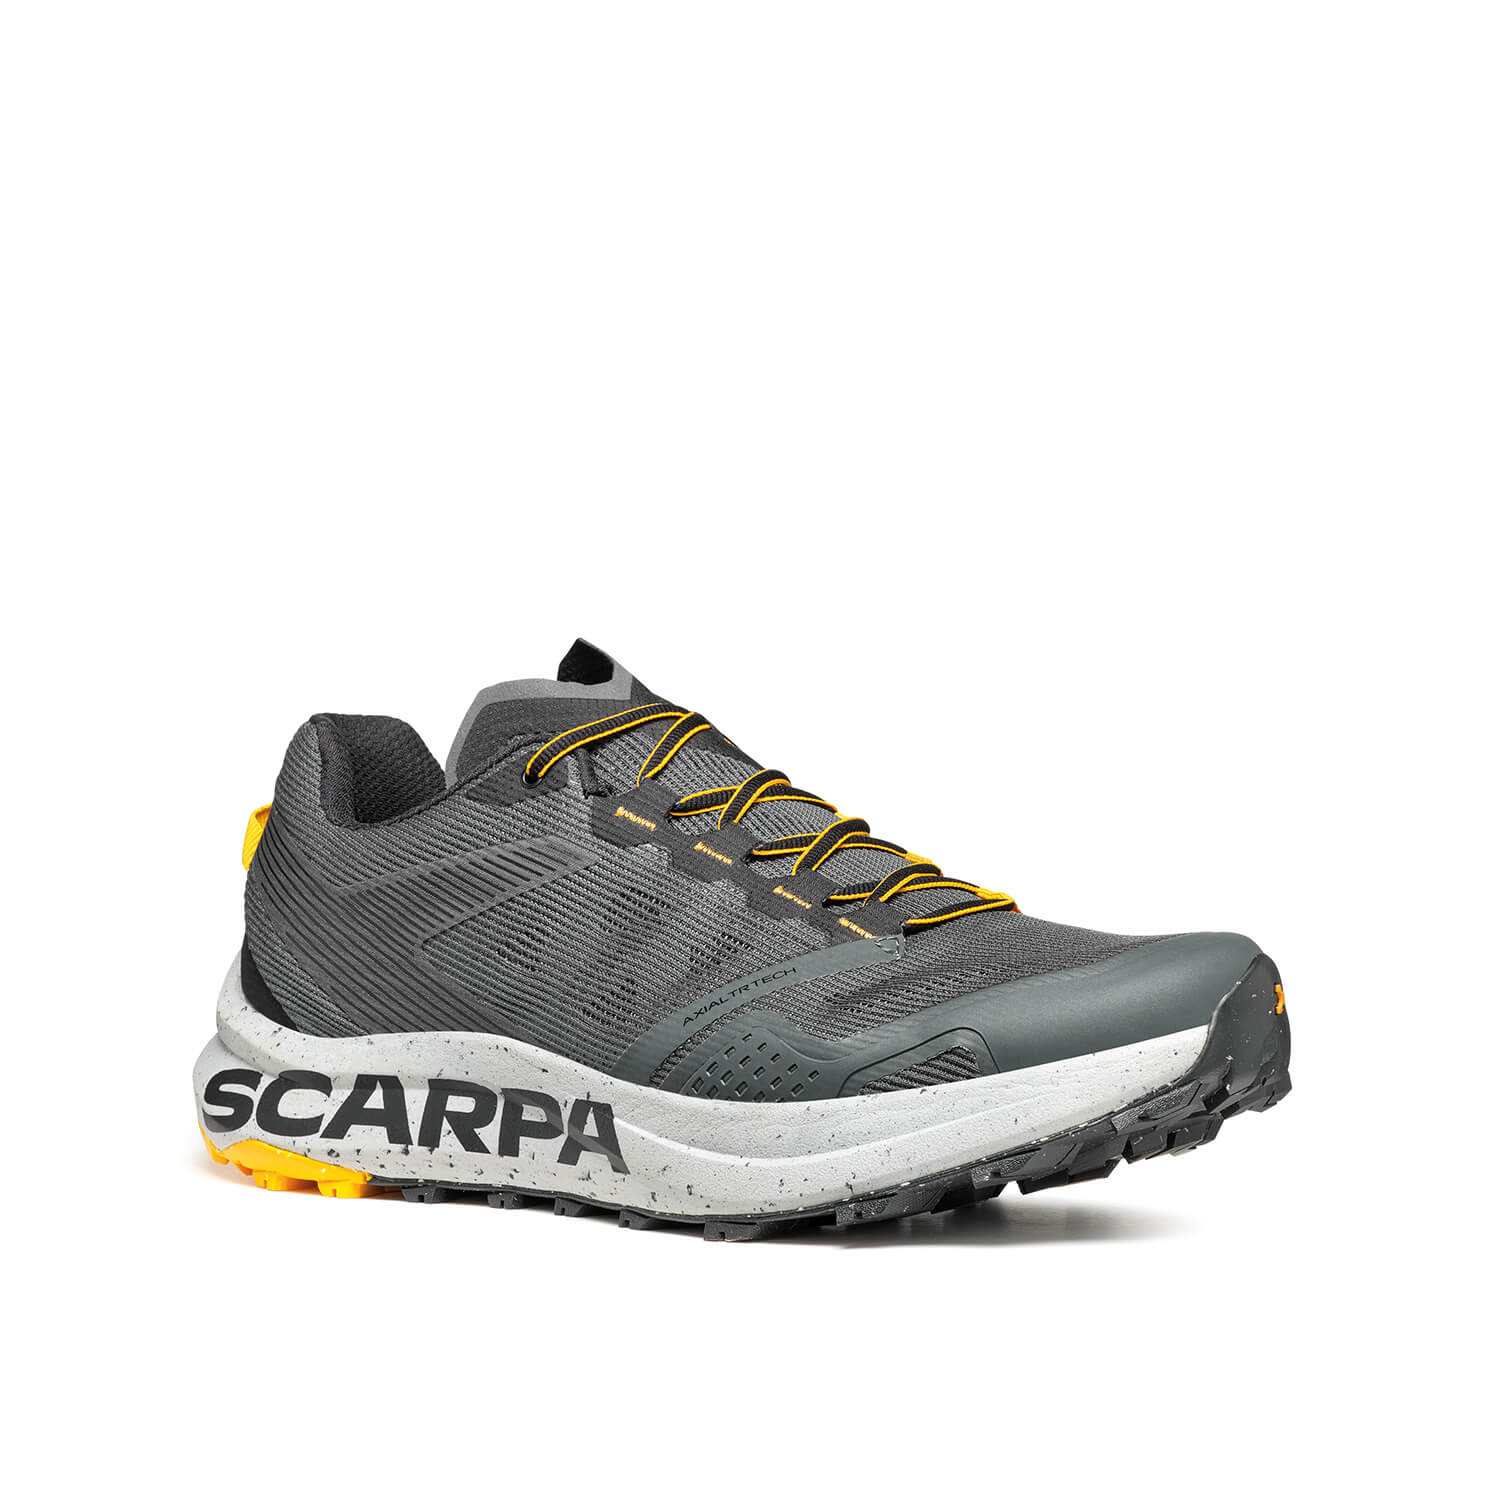 Scarpa Trail Running Schuhe Spin Planet anthracite/saffron